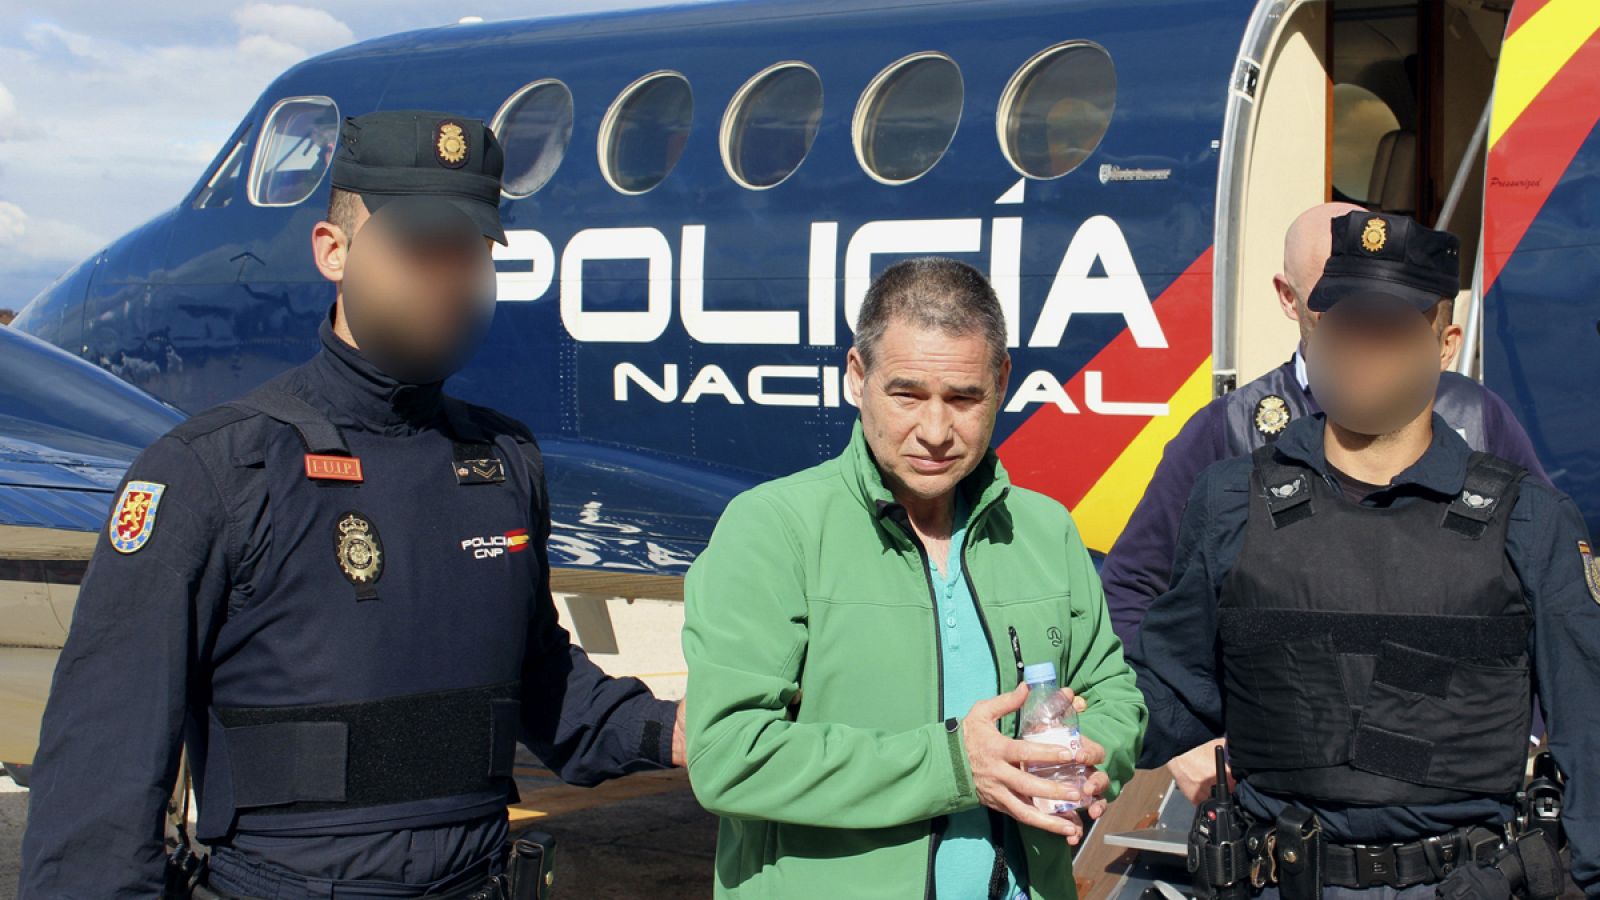 Fotografía facilitada por el Ministerio del Interior del etarra Antonio Troitiño, a su llegada a España en vuelo desde Londres.